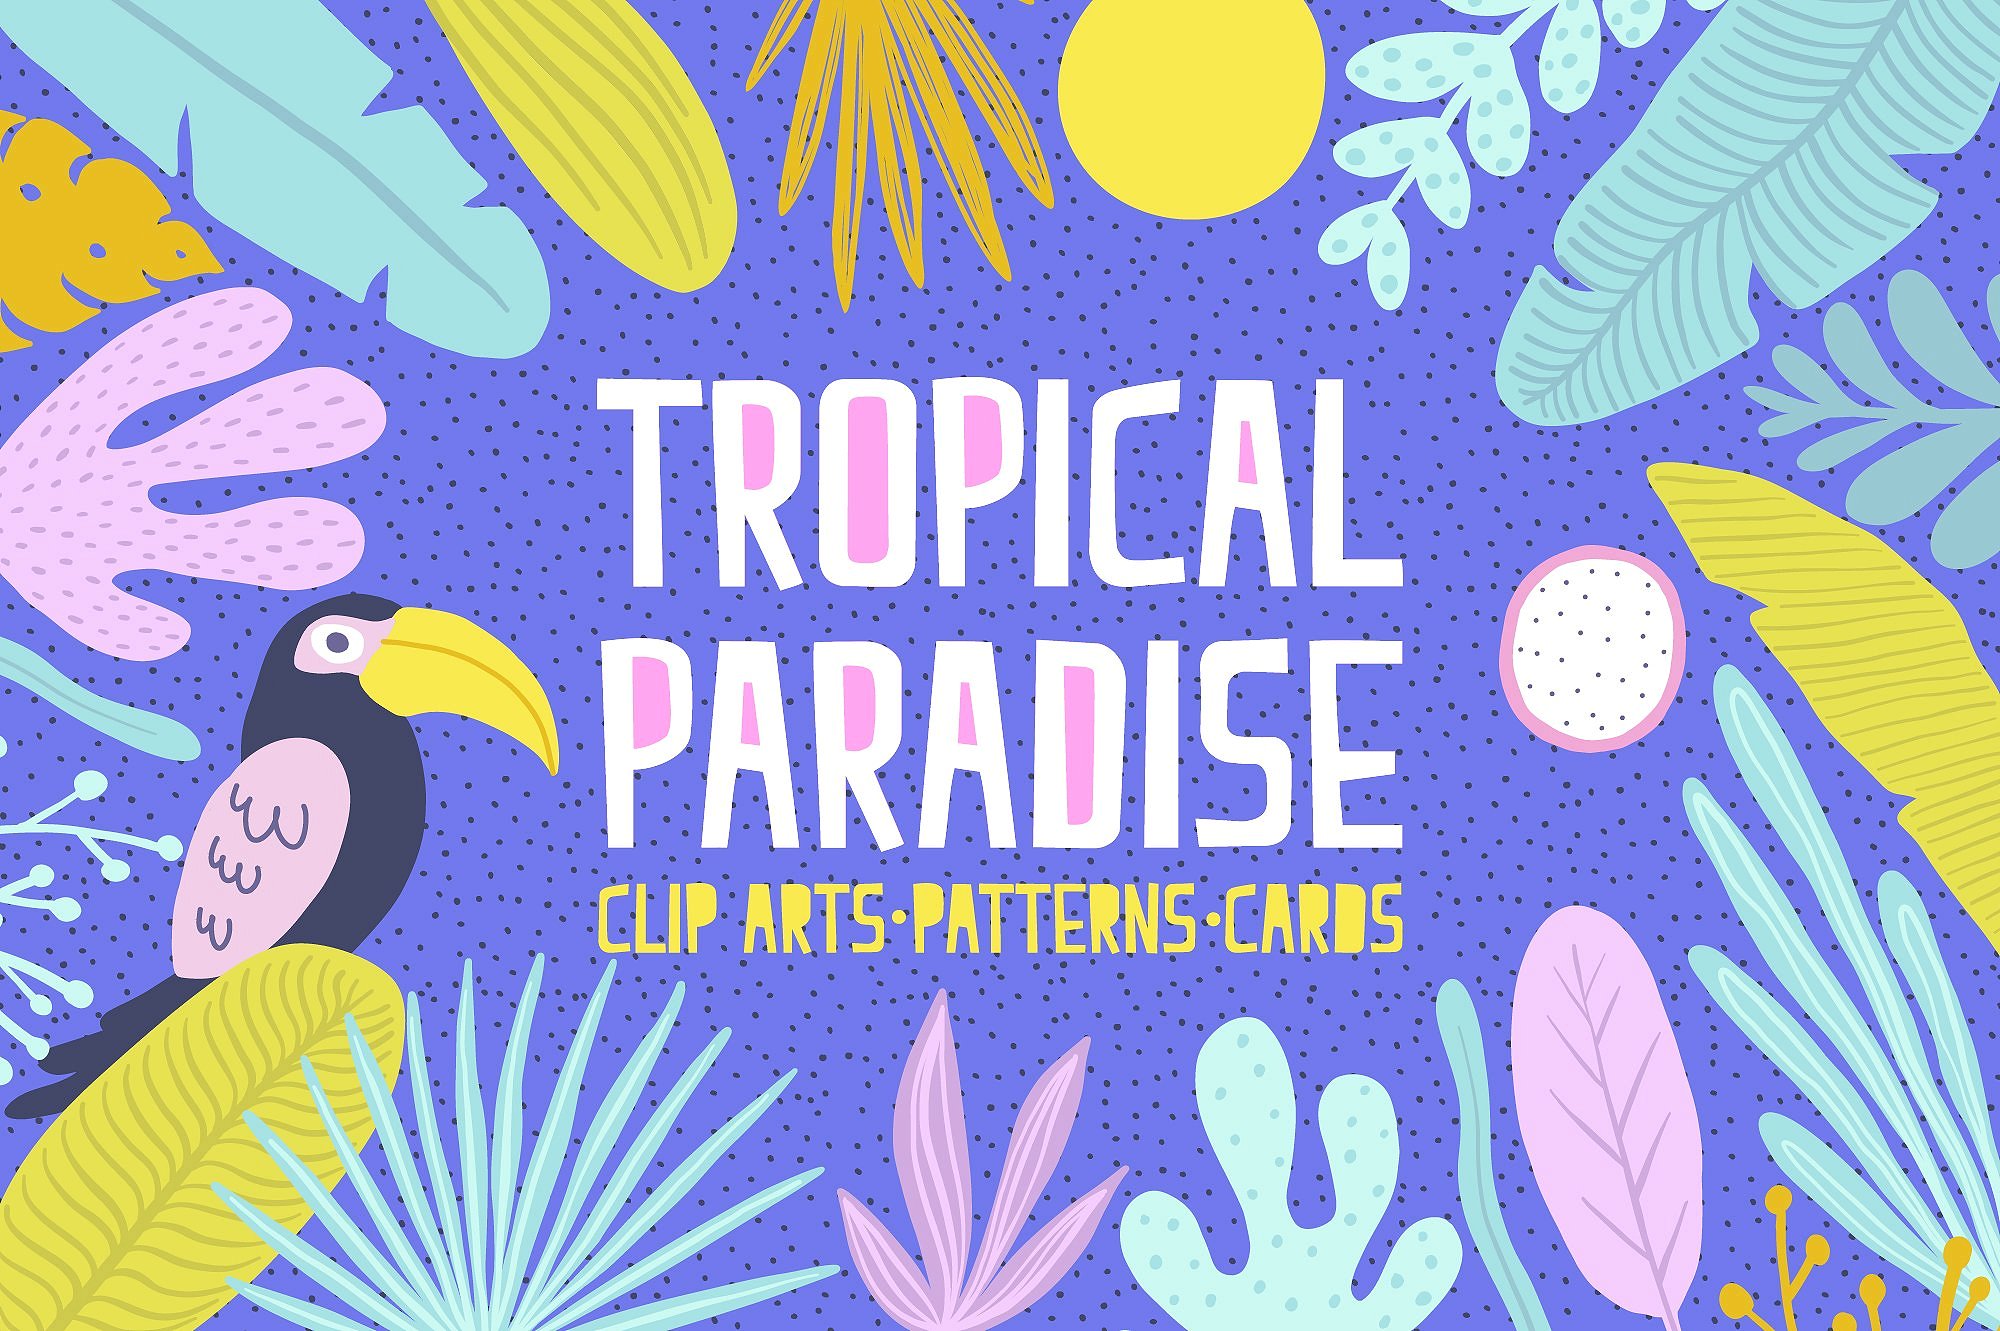 دانلود مجموعه وکتورهای Tropical Paradise Set